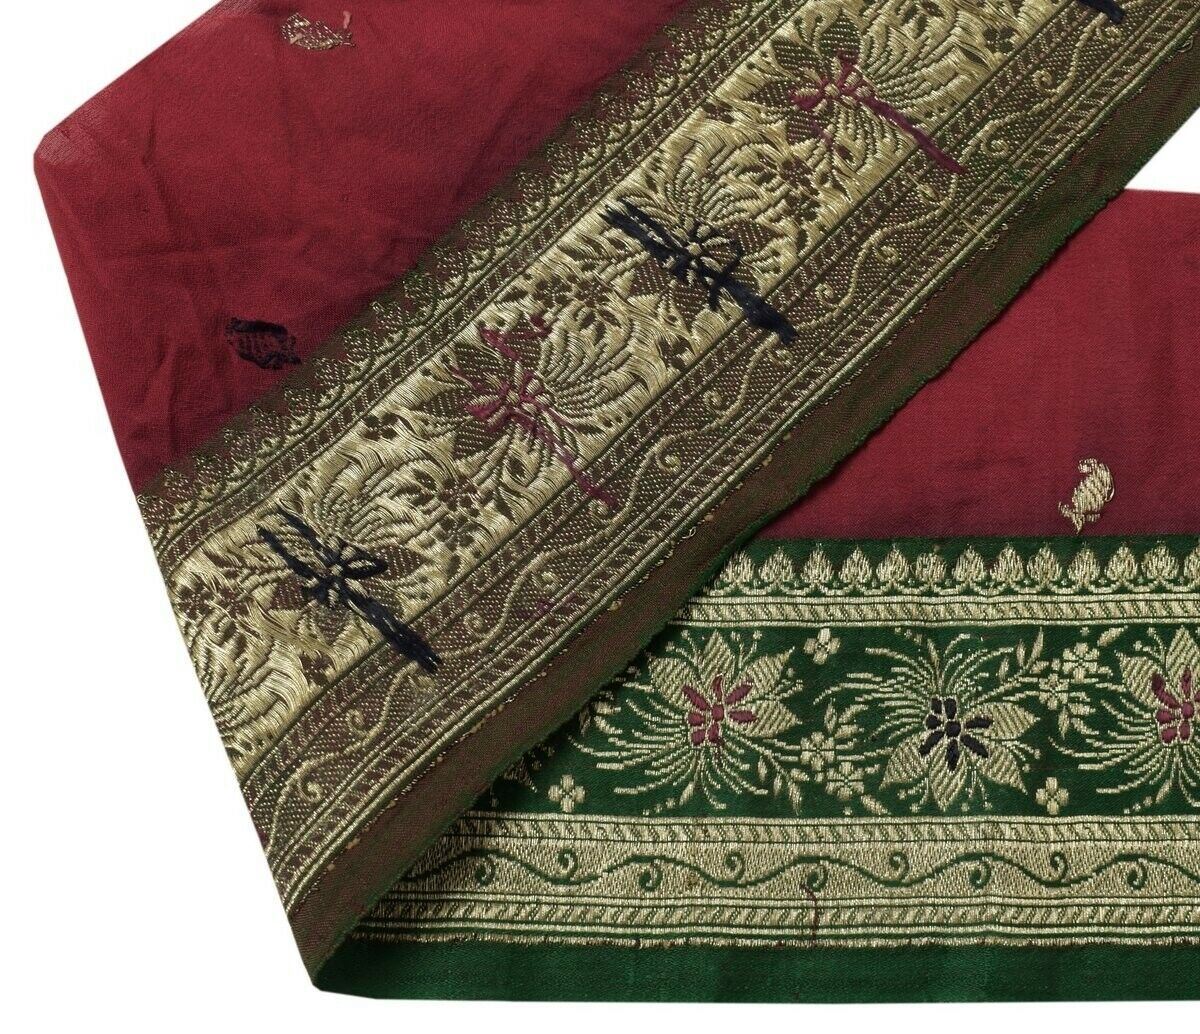 Vintage Sari Border Indian Craft Trim Zari Woven Banarasi Brocade Green Lace